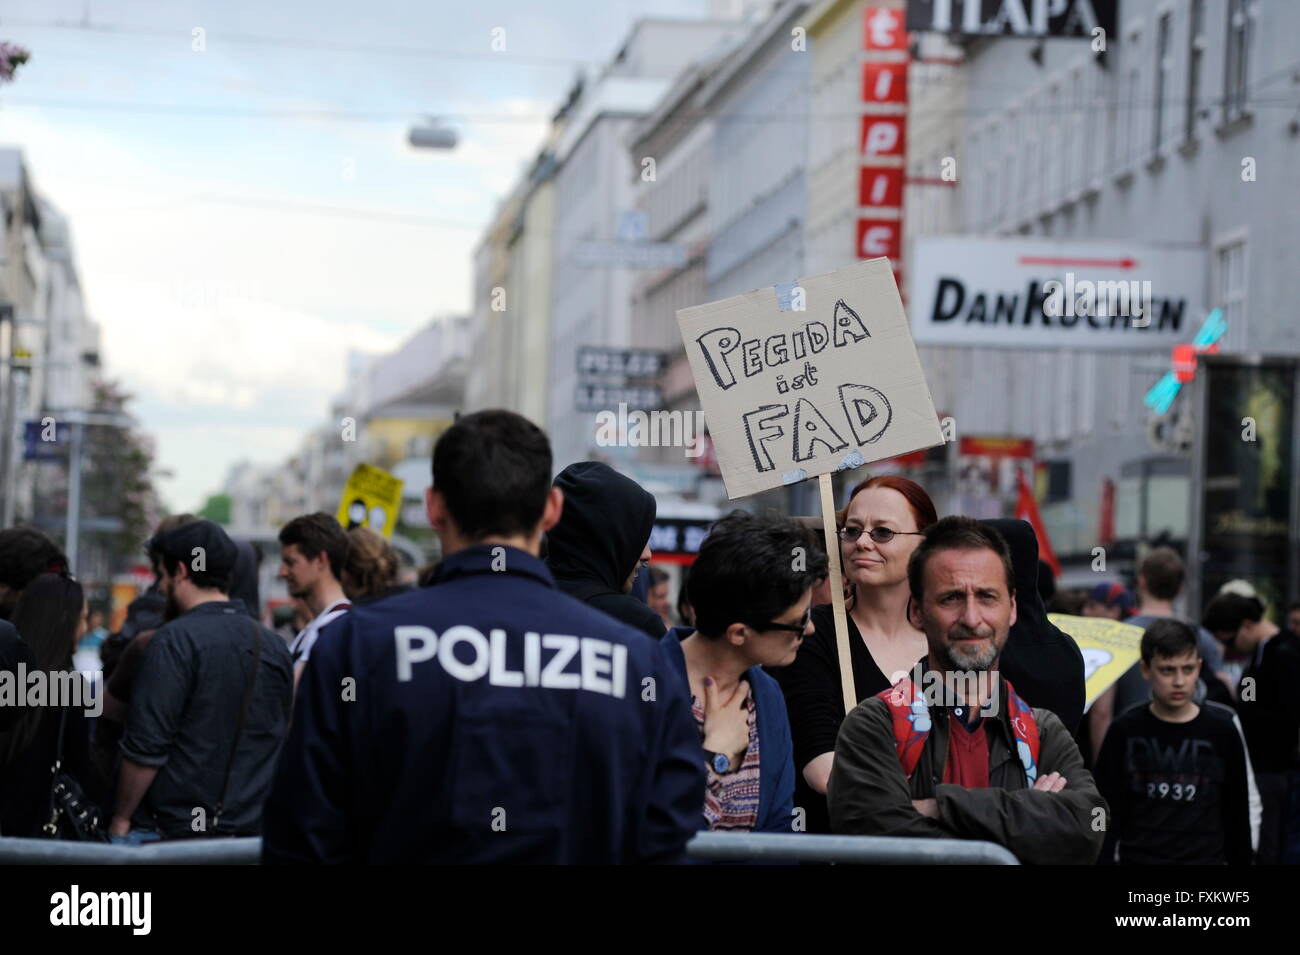 Wien, Österreich. 16. April 2016. Massive Polizeipräsenz bei einer Anti-Pegida-Protest in Wien. Mehrere linke Organisationen protestieren gegen die Pegida-Rallye.  Bildnachweis: Franz Perc/Alamy Live-Nachrichten Stockfoto